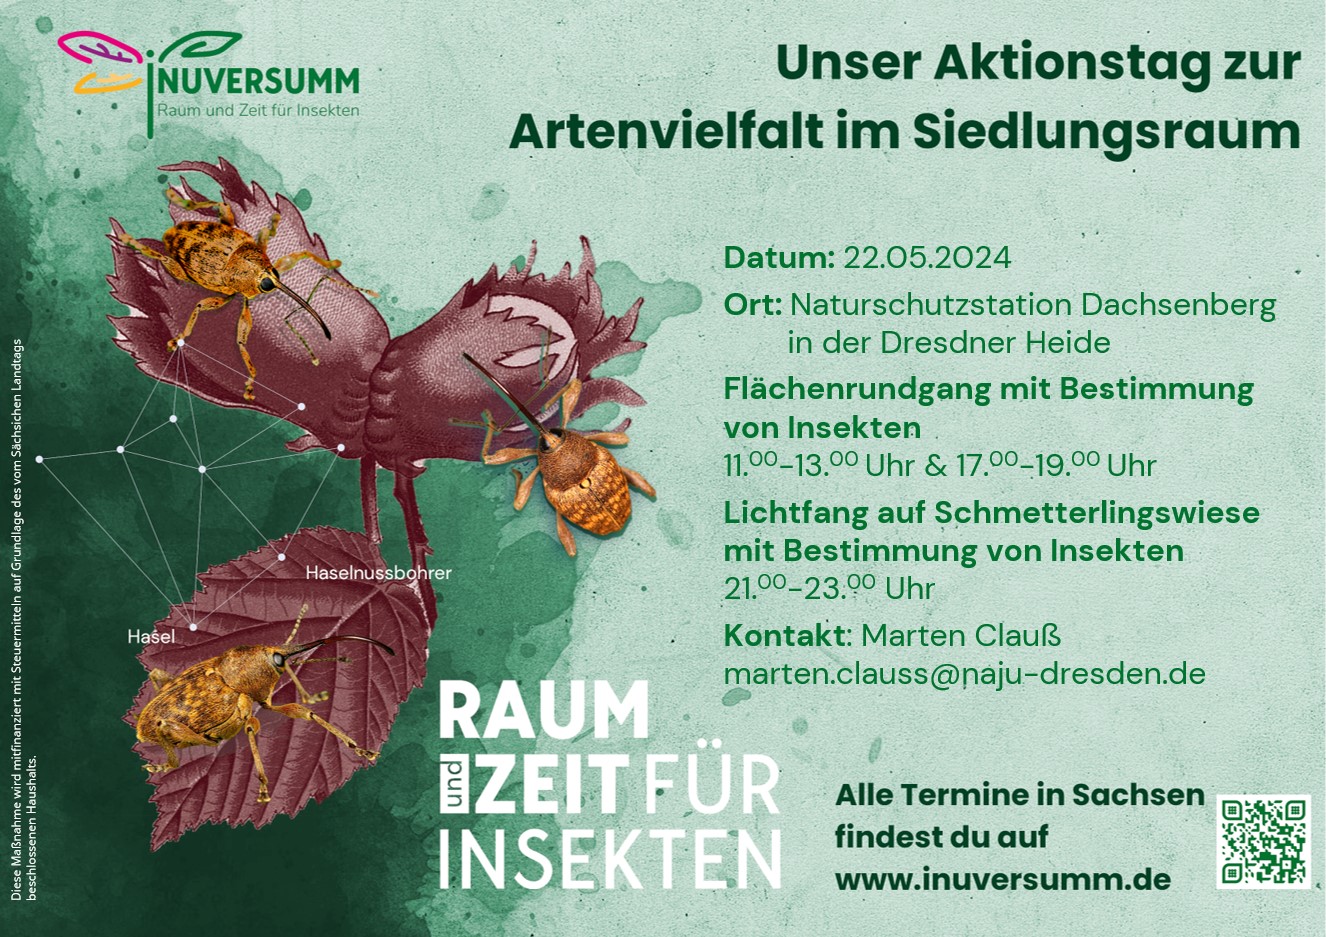 Einladung zum Aktionstag zur Artenvielfalt im Siedlungsraum am 22.05.2024 in der Naturschutzstation Dachsenberg